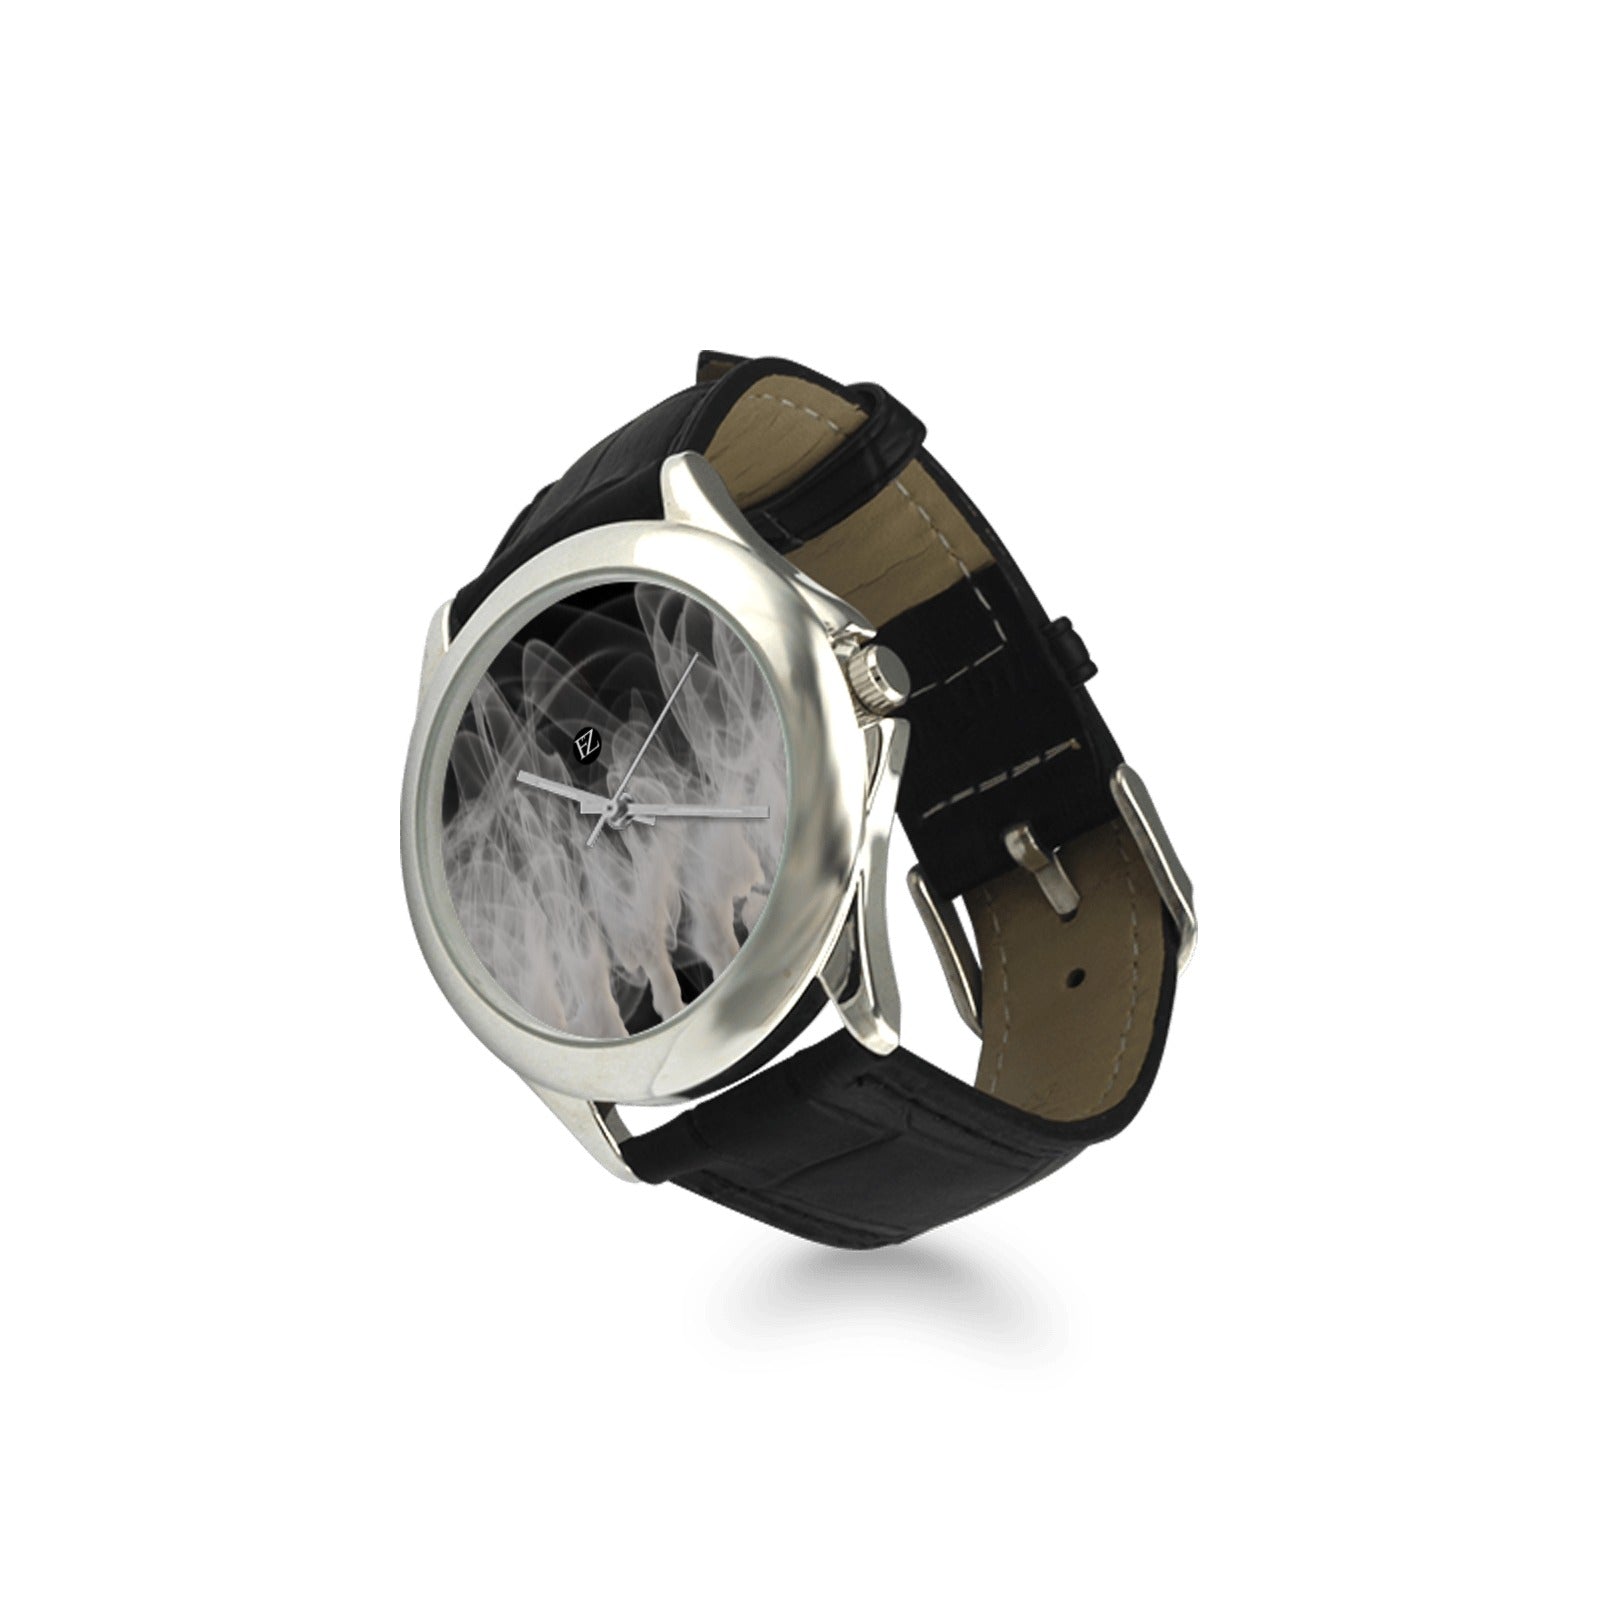 fz women's watch women's classic leather strap watch (model 203)